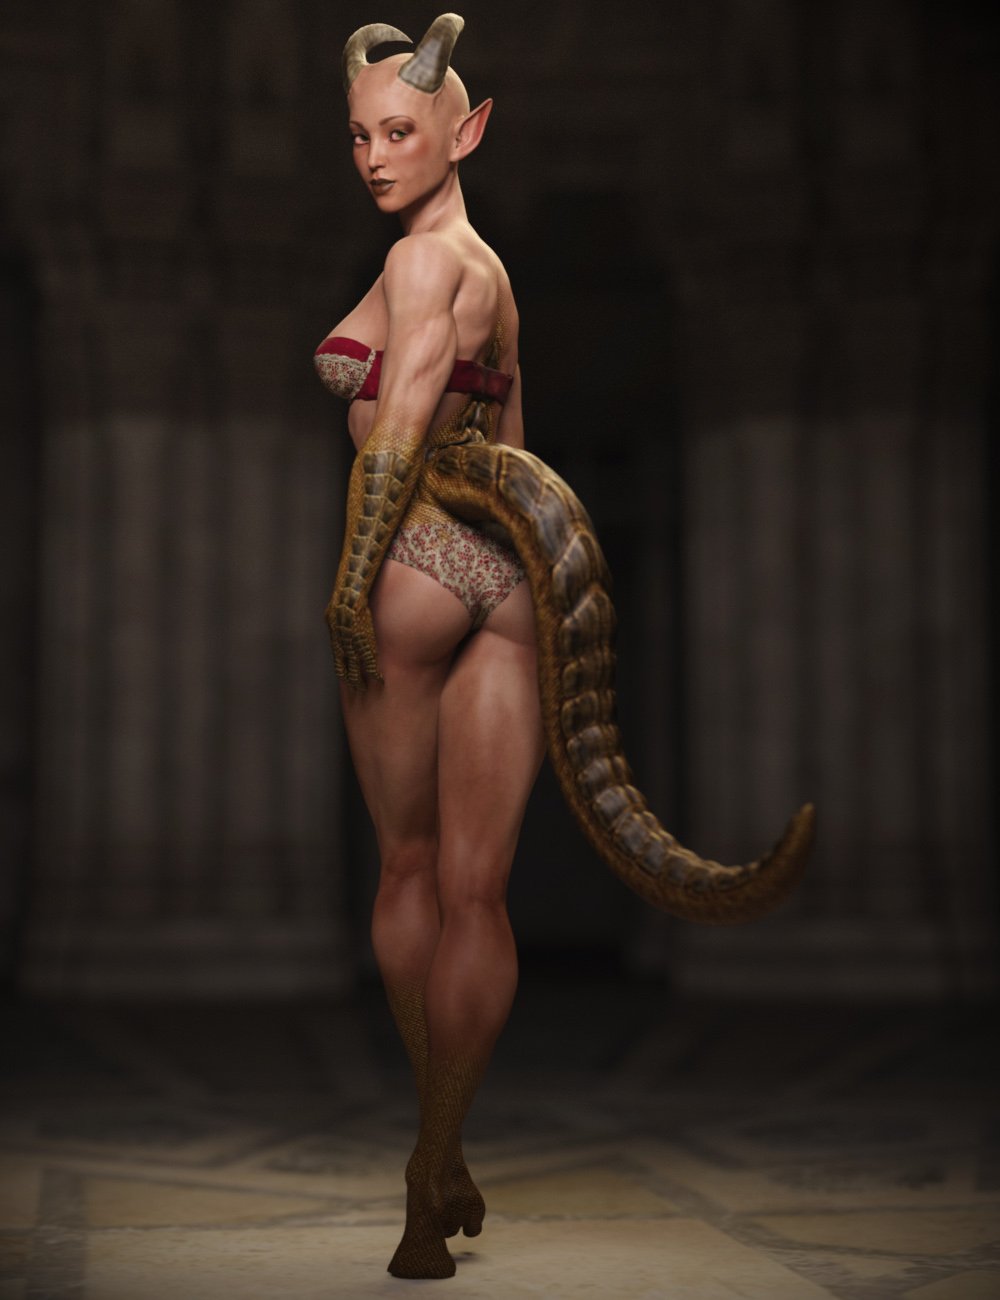 Dragelle for Genesis 3 Female by: RawArt, 3D Models by Daz 3D